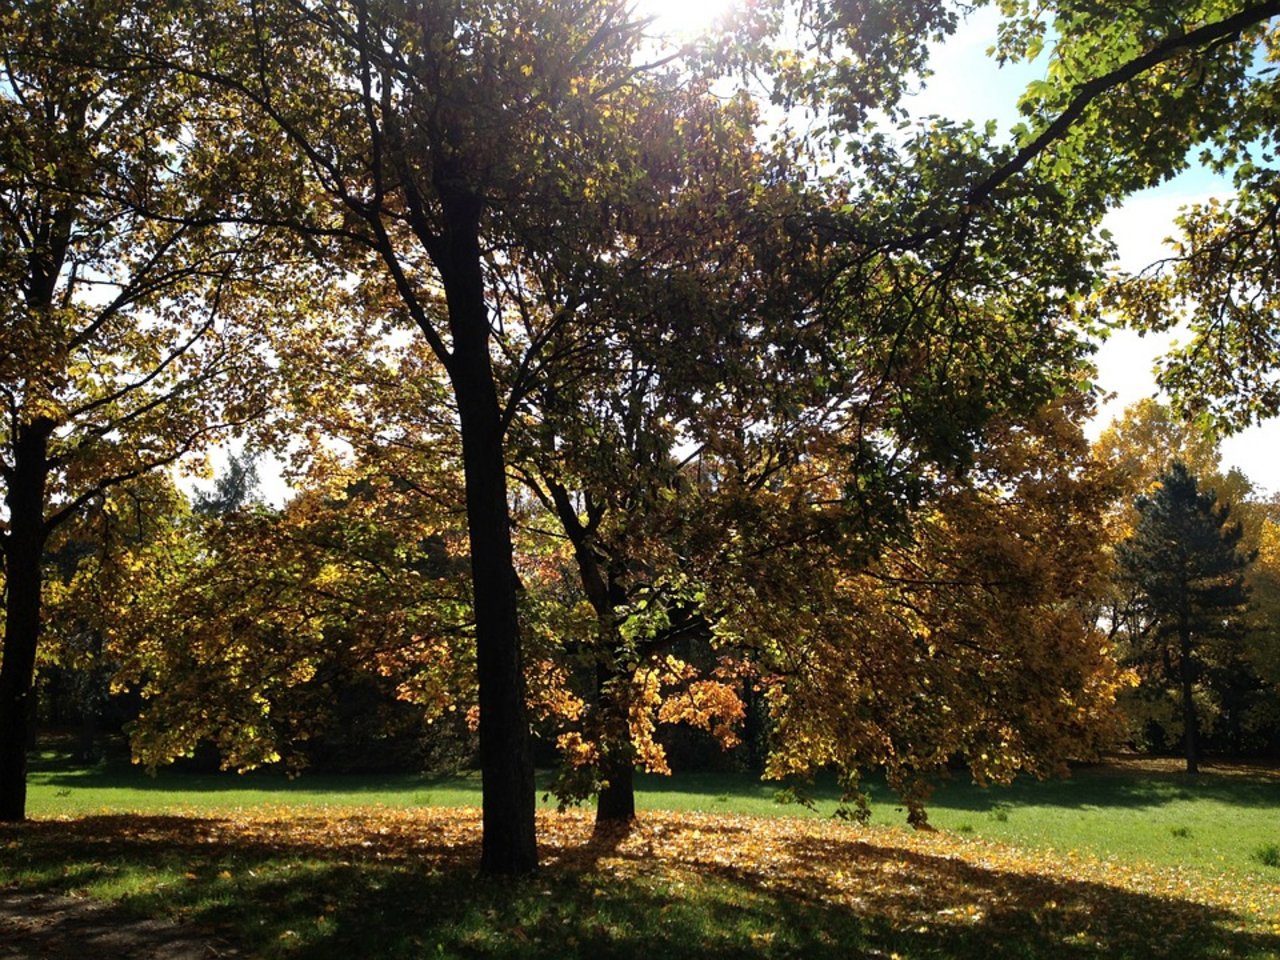 Zum Herbstbeginn wird es noch einmal schön warm - Altweibersommer sei Dank. (Bild Pixabay)